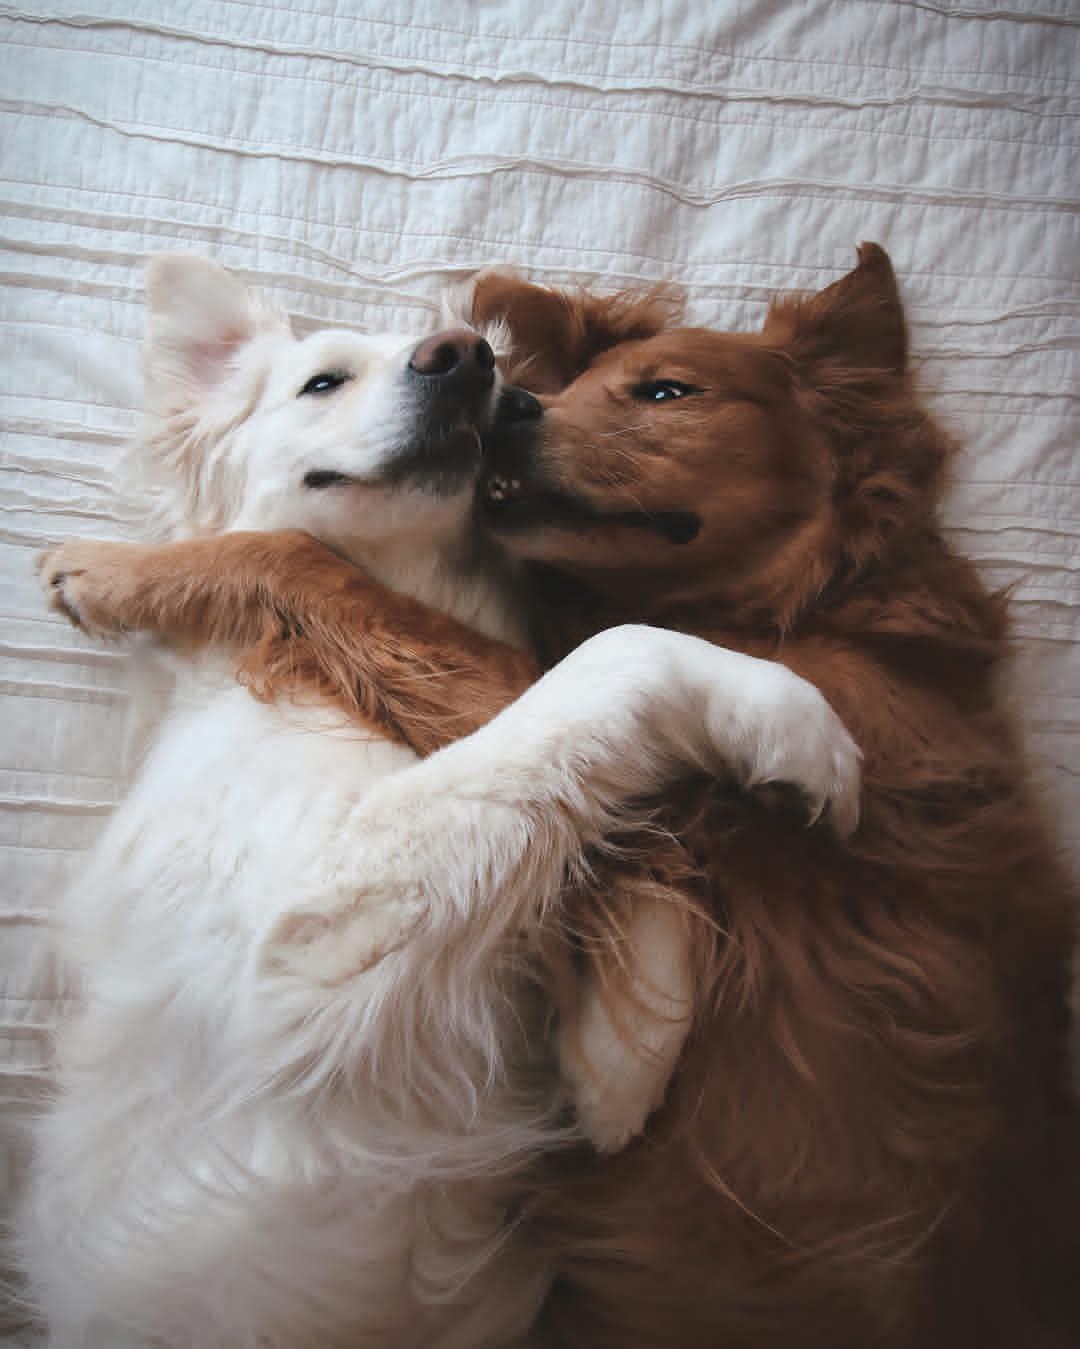 Bức ảnh này sẽ làm bạn bất ngờ. Một cặp chú chó dính lấy nhau, tạo nên một tình bạn thật đáng yêu. Bạn sẽ cảm thấy tình cảm chúng mang đến và muốn xem hình ảnh này nhiều lần hơn.